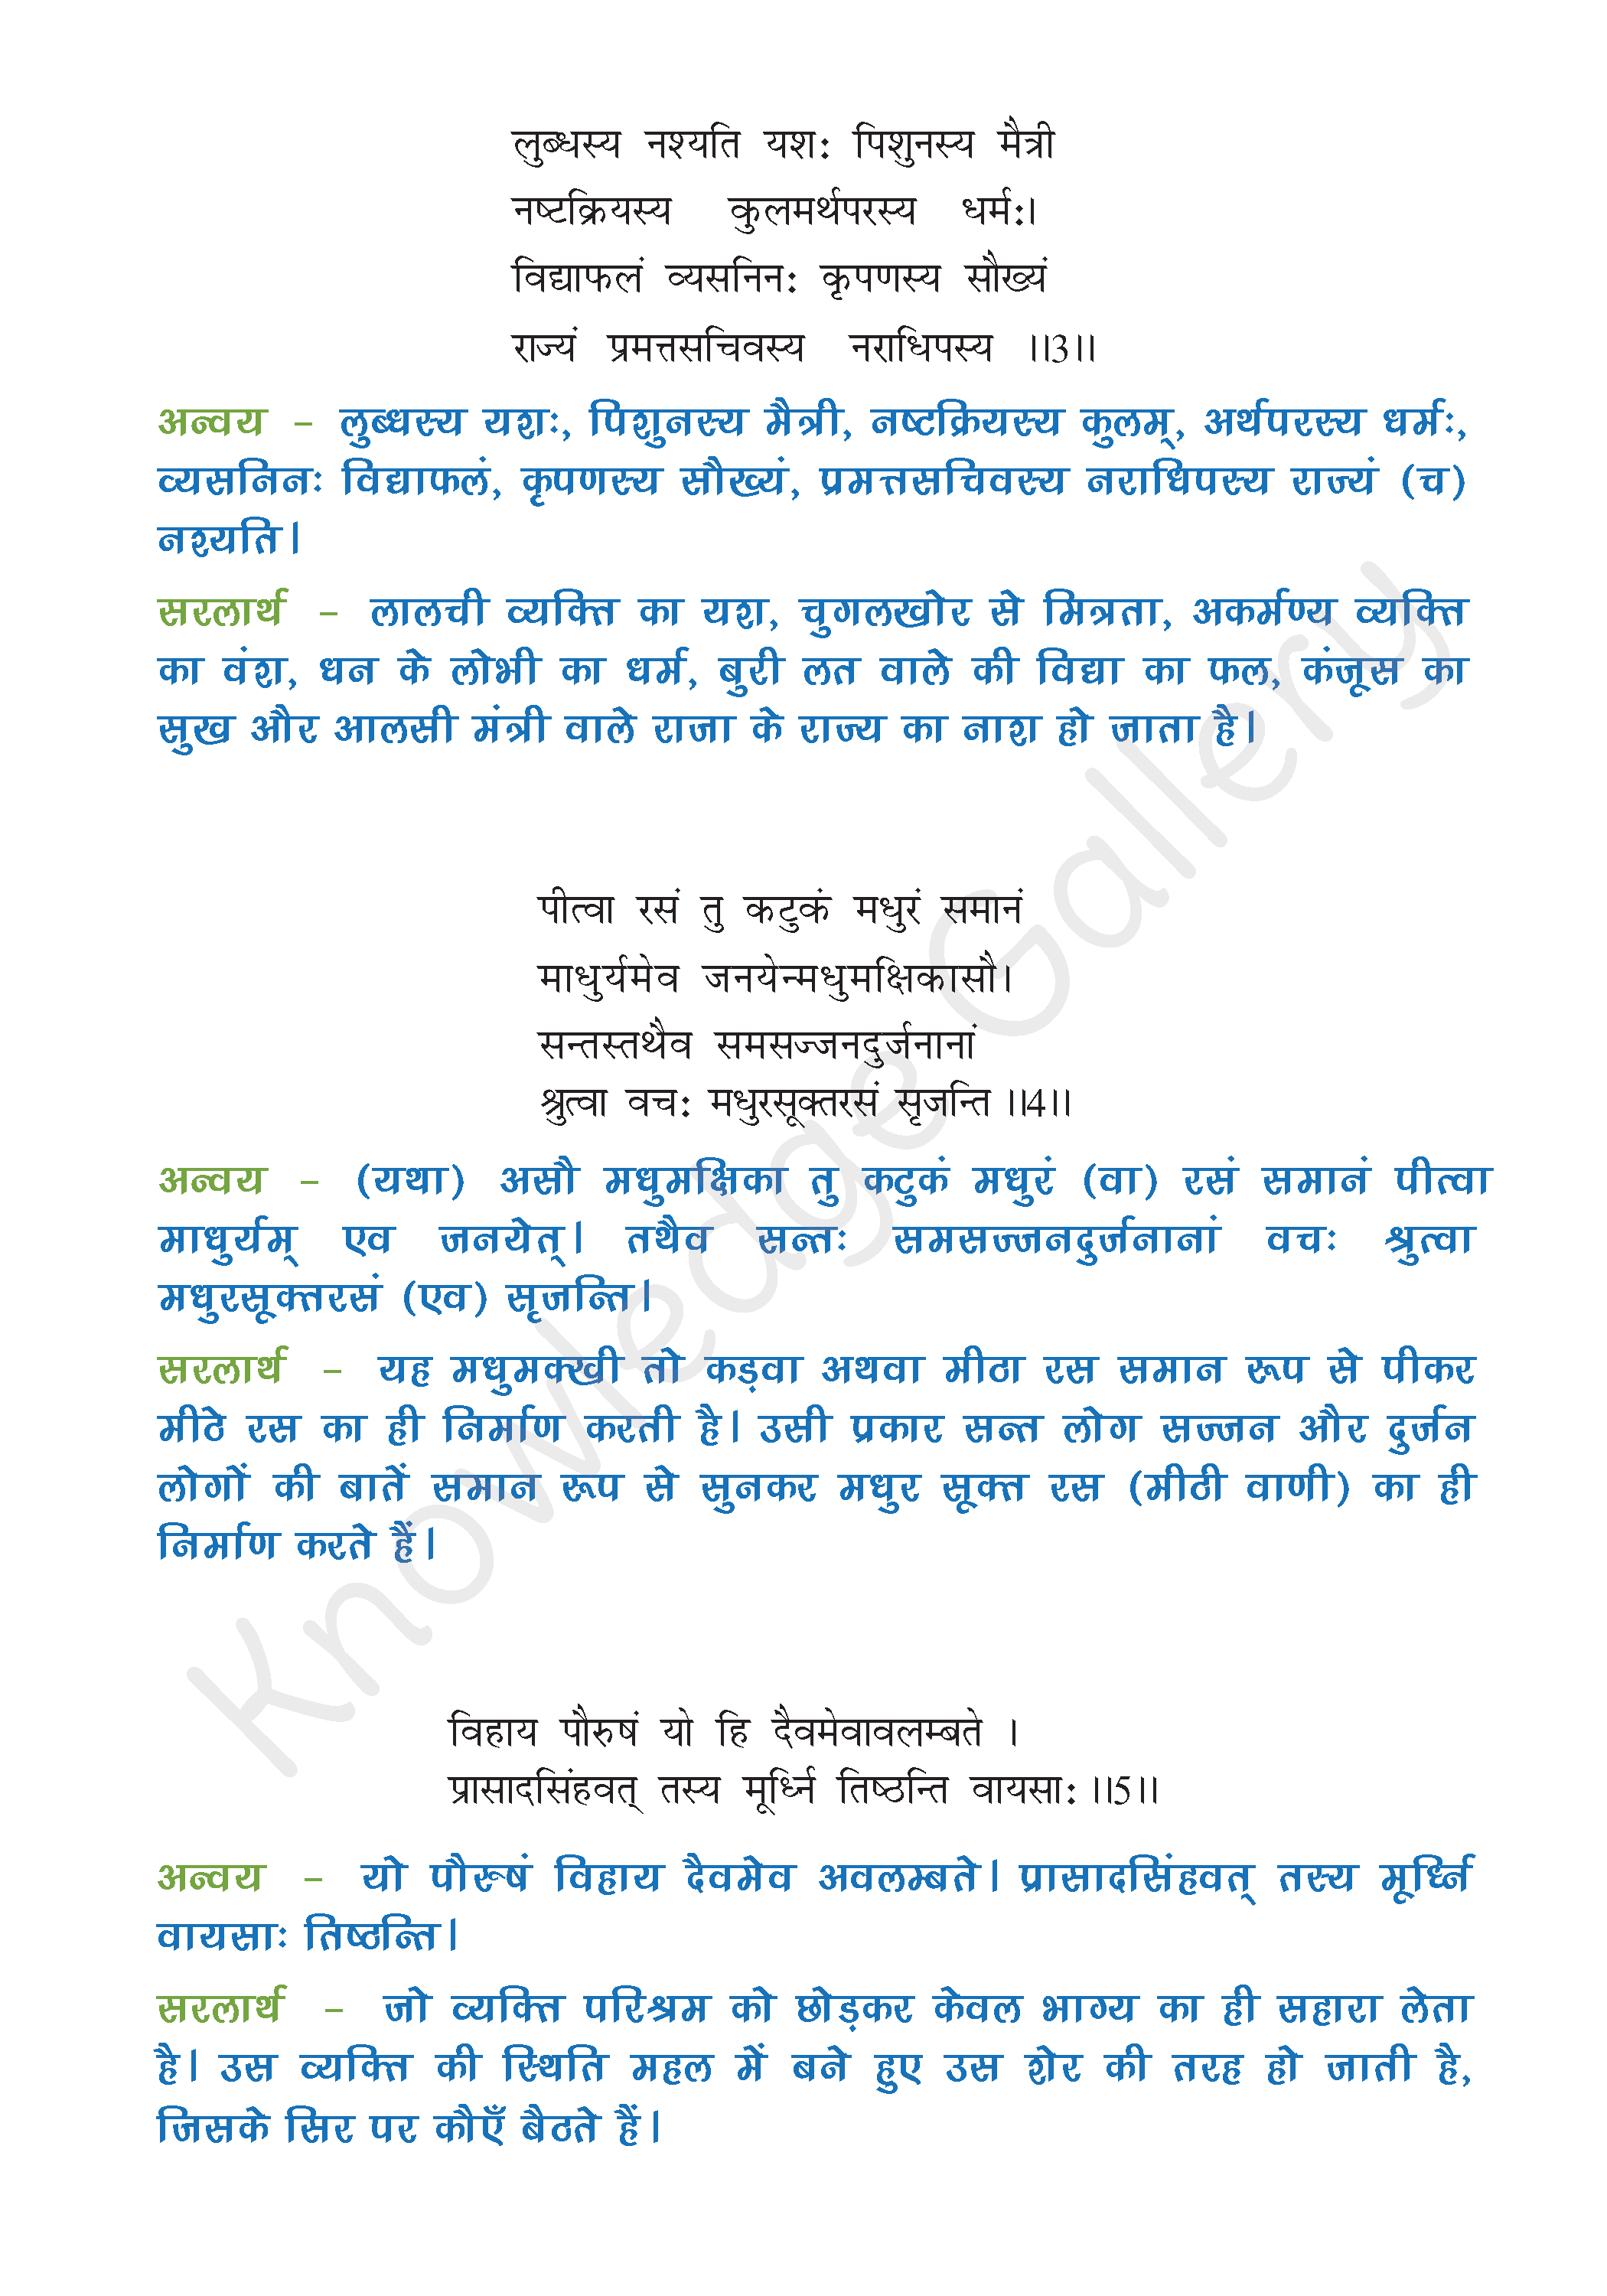 NCERT Solution For Class 8 Sanskrit Chapter 1 part 2